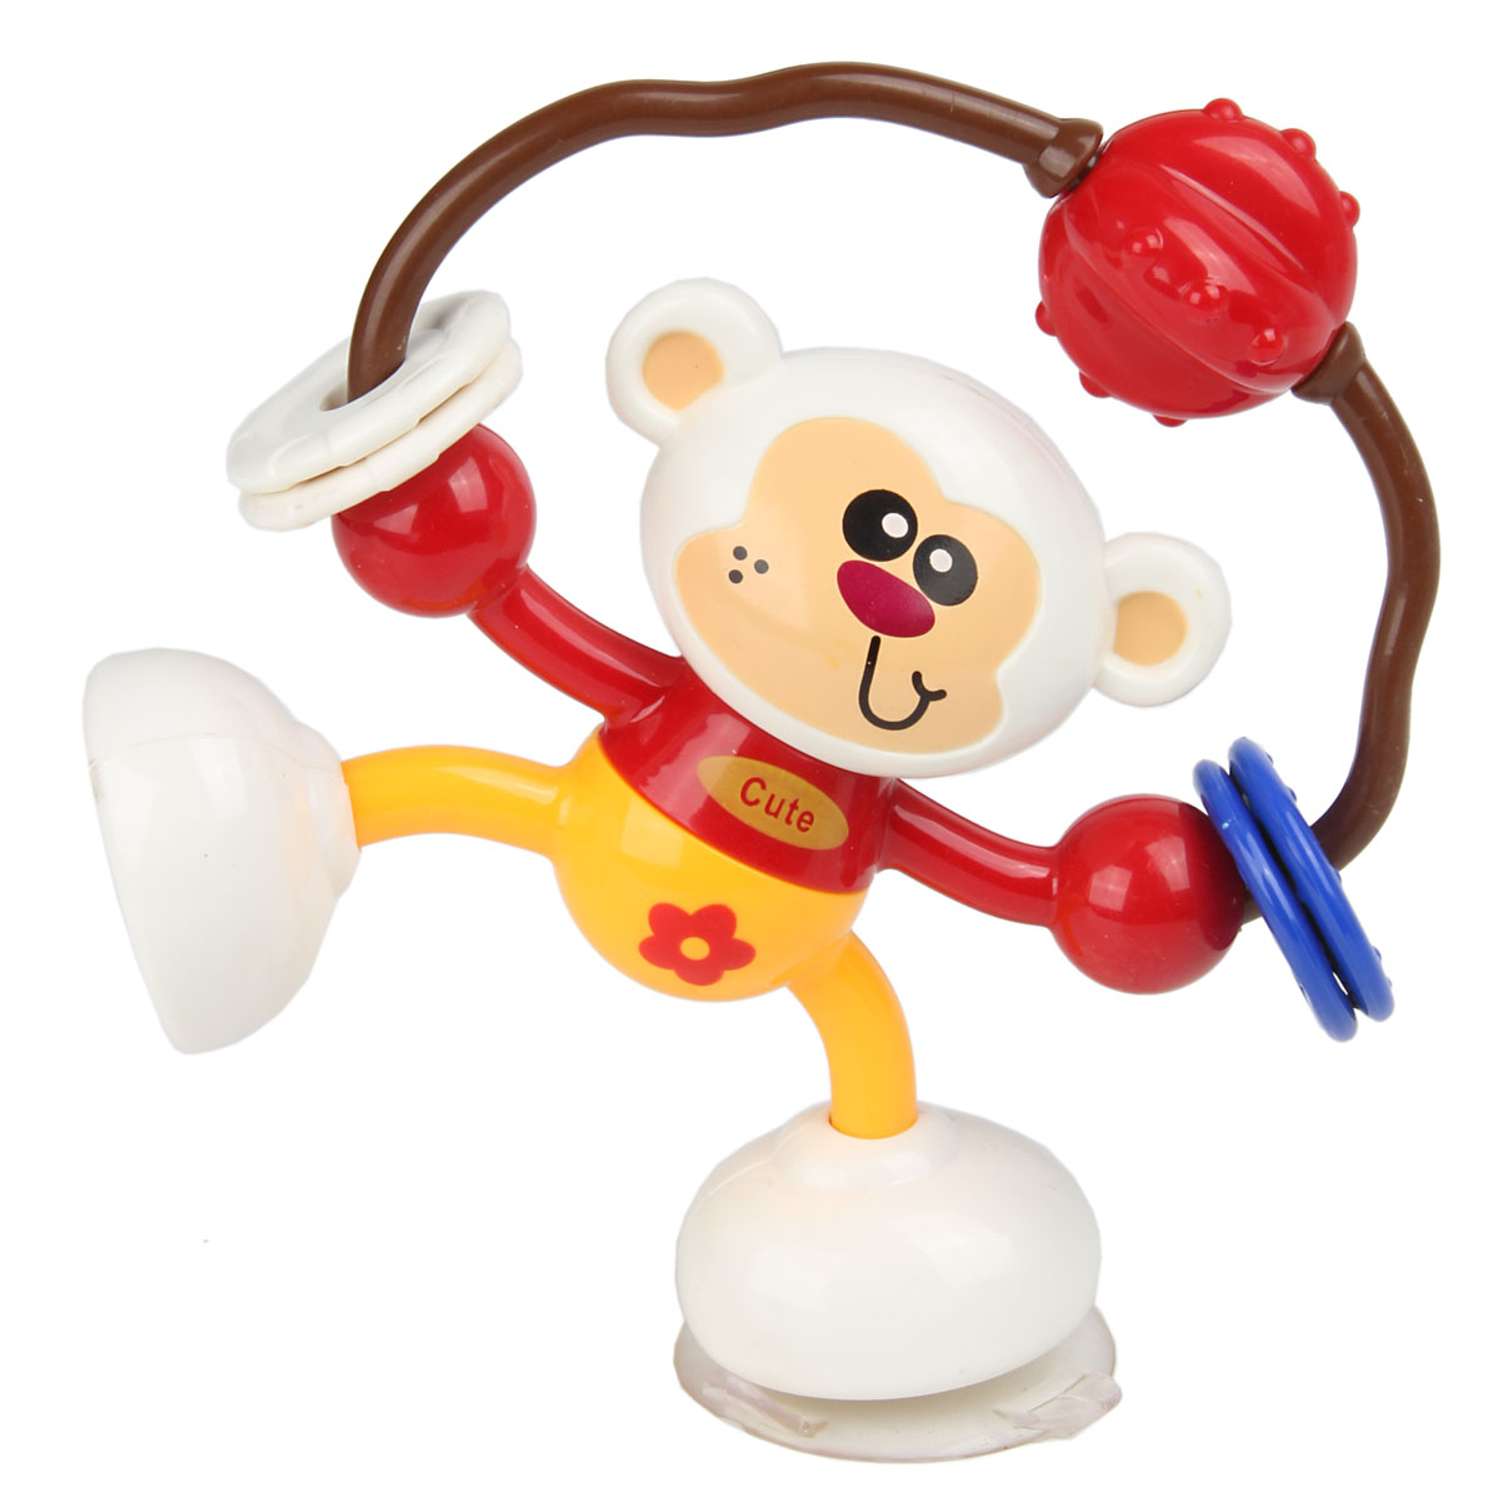 Игрушка крутилка. Погремушка Пома обезьянка. Прорезыватель-погремушка Baby обезьянка. Игрушка красная обезьянка.